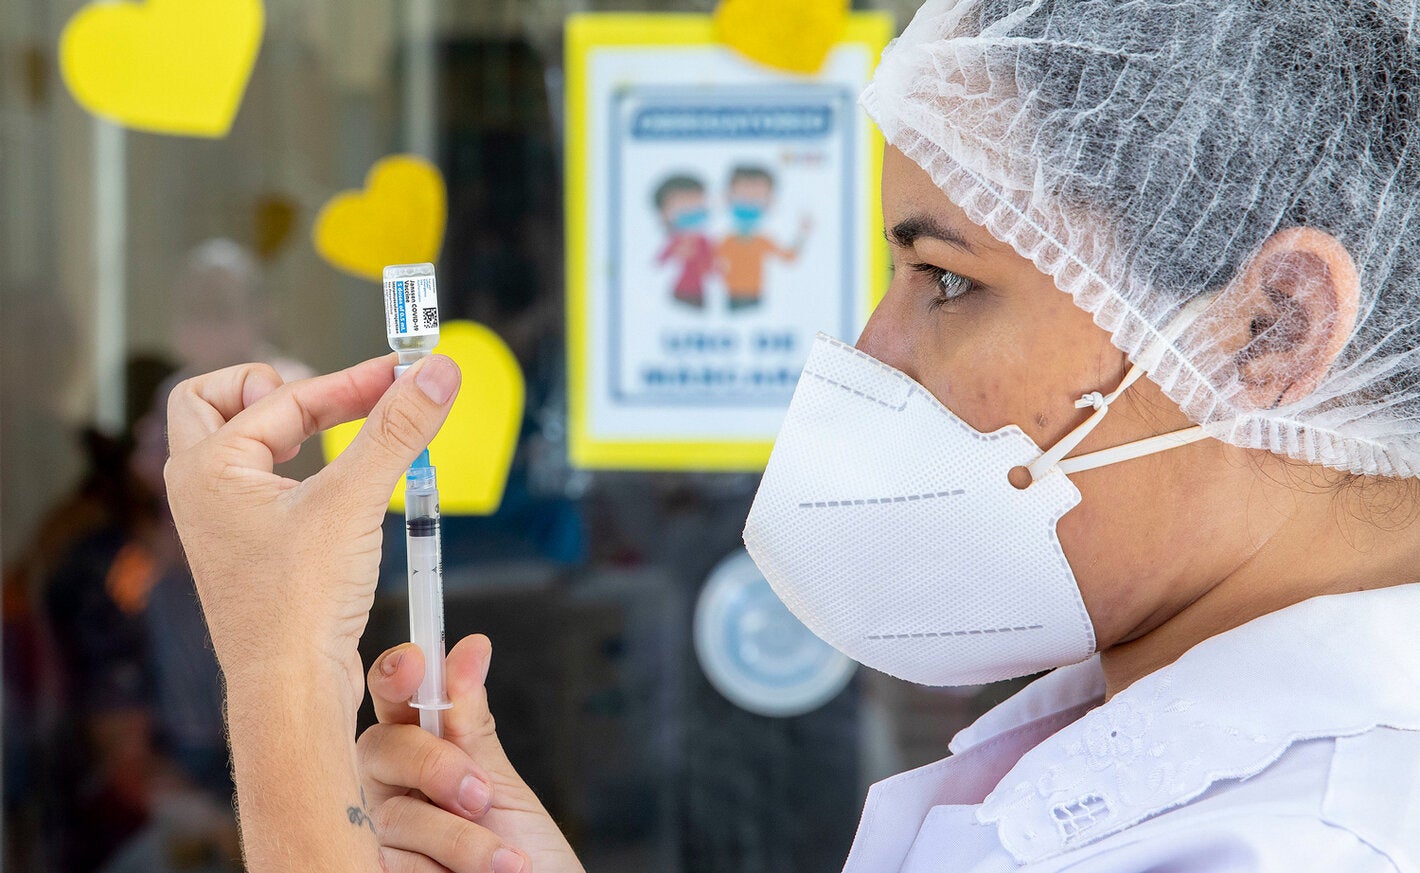 La OPS insta a aplicar medidas de salud pública y ampliar la vacunación  ante la variante ómicron - OPS/OMS | Organización Panamericana de la Salud